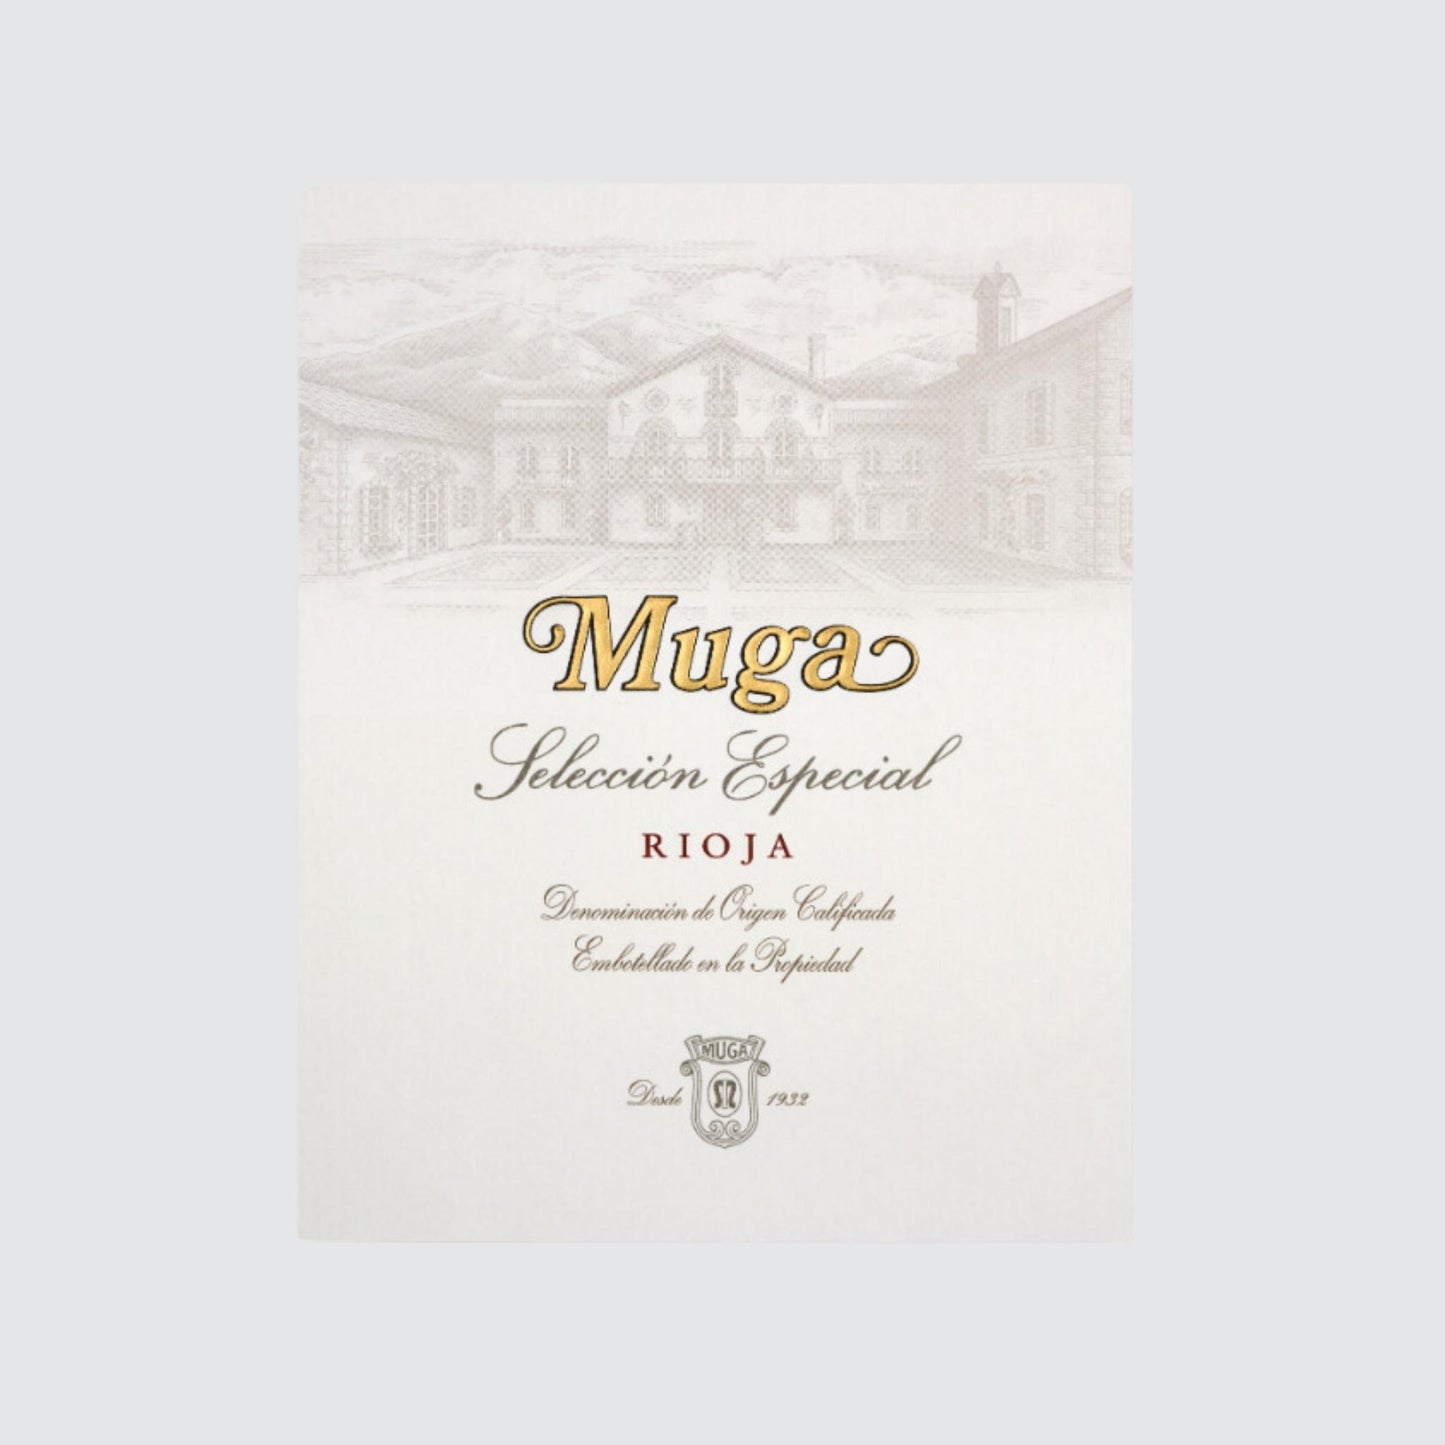 Bodegas Muga Reserva Seleccion Especial 2016 Rioja Red Wine label